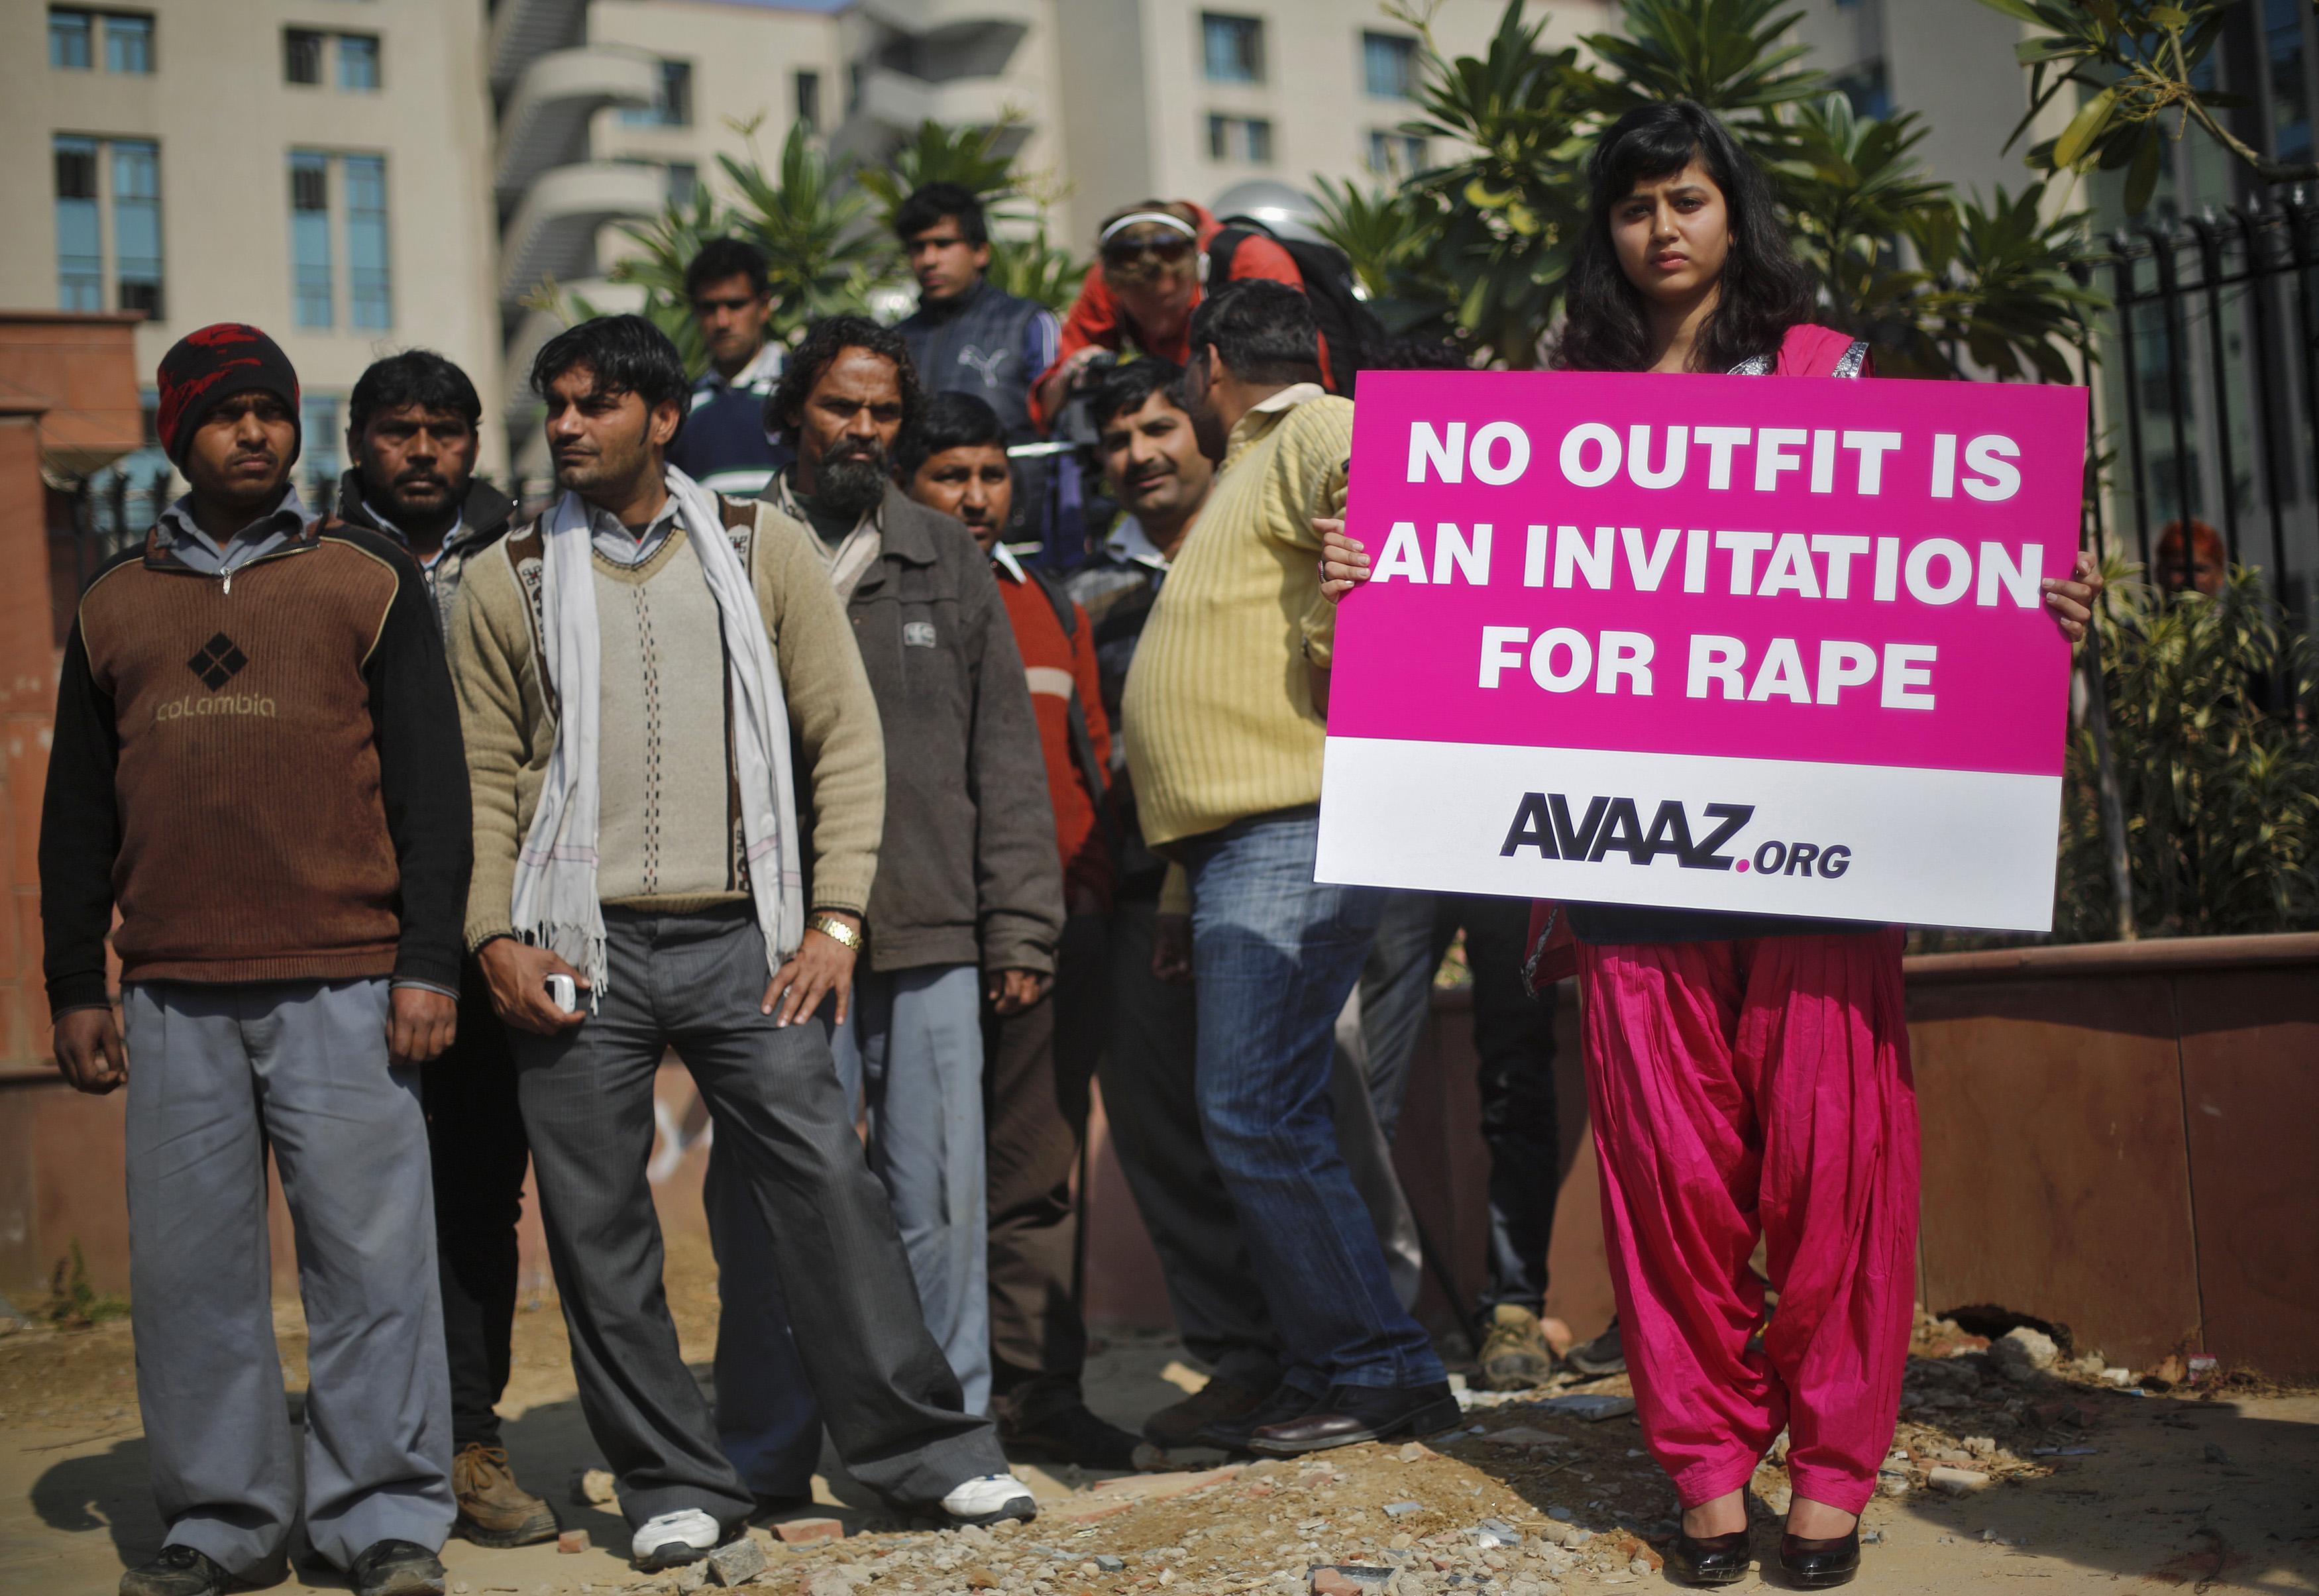 1.330 καταγγελίες για βιασμό έχουν γίνει στο Νέο Δελχί από τις αρχές του έτους